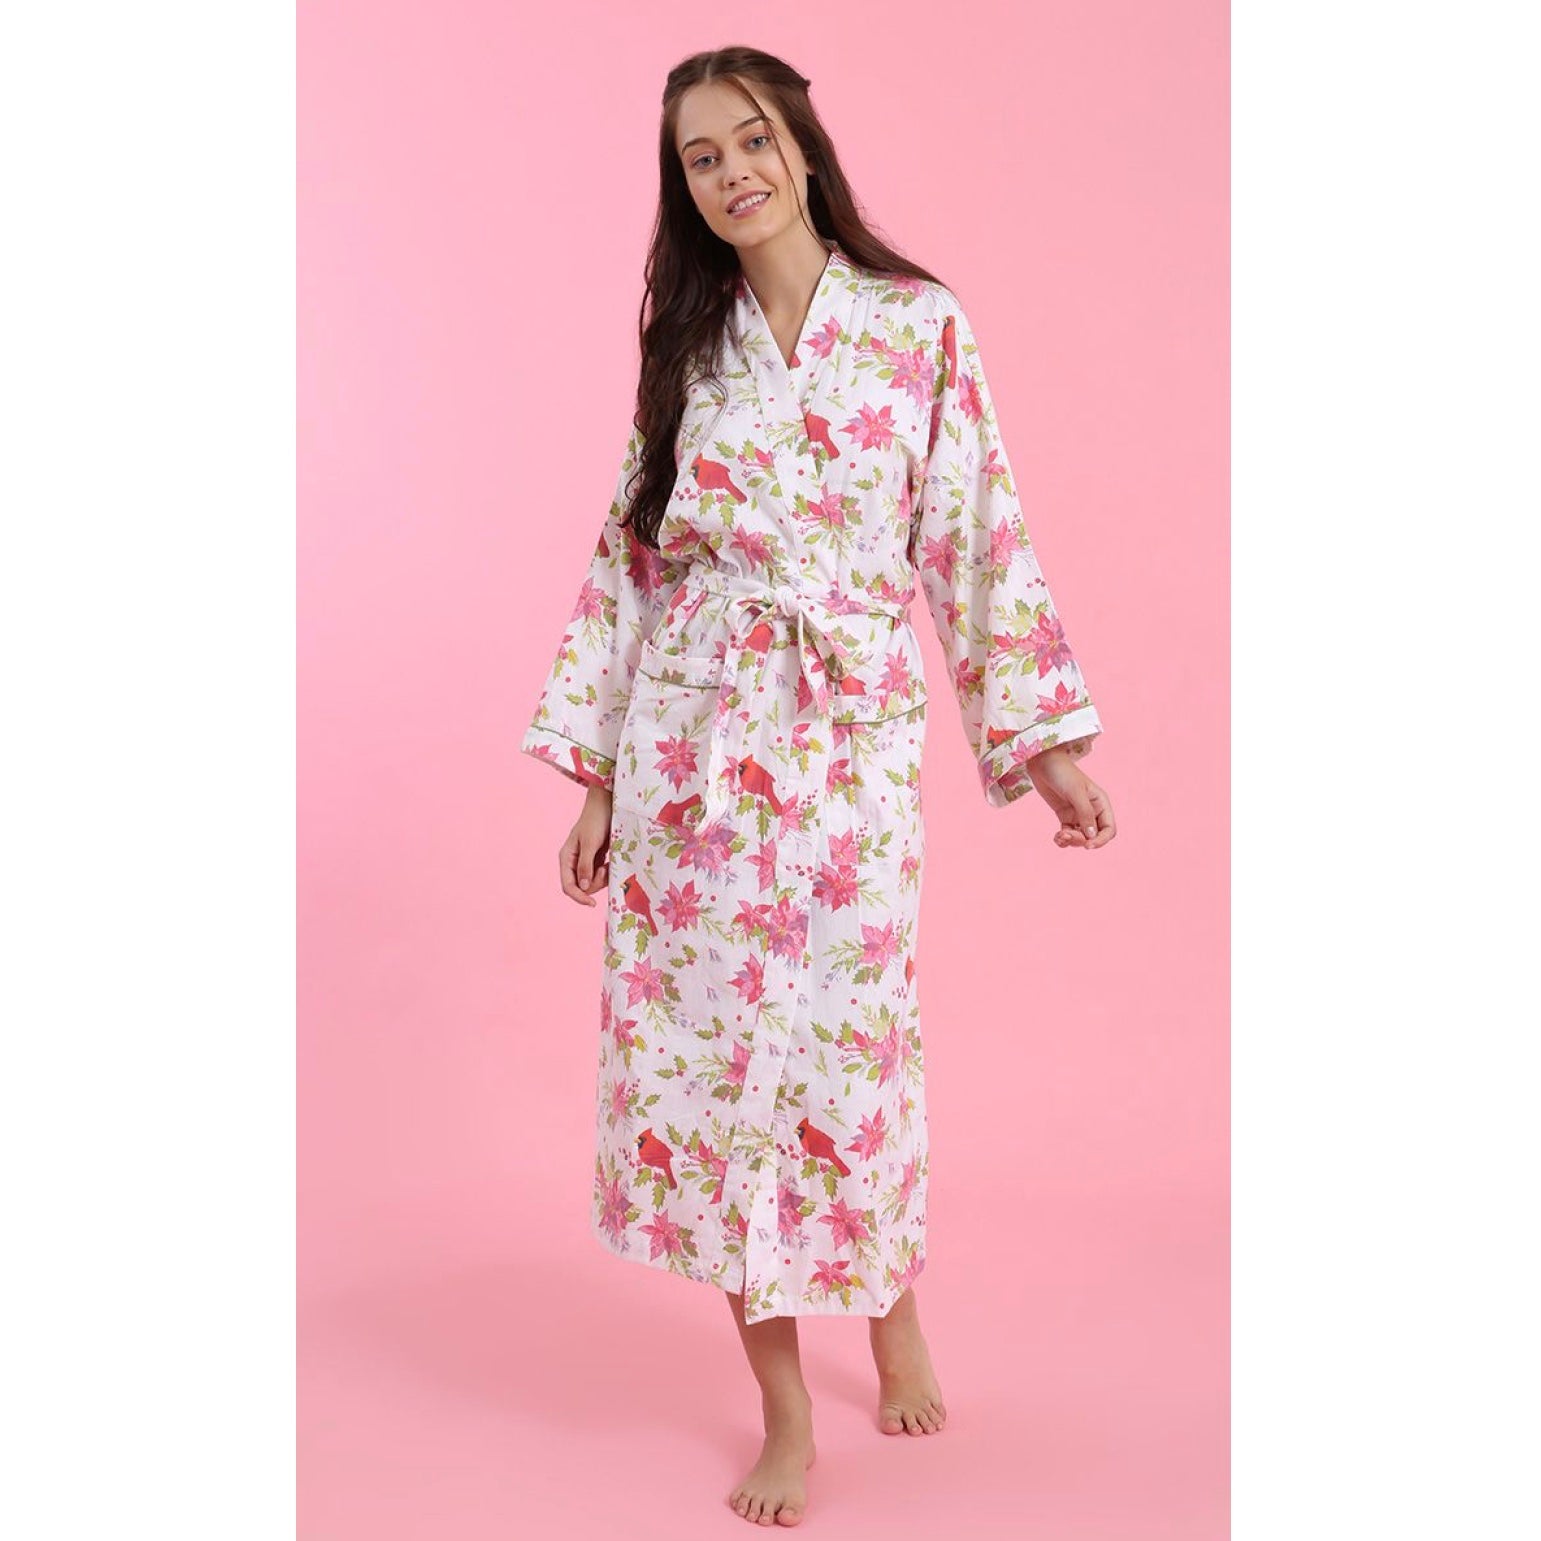 Mahogany "Poinsettia" Flannel Robe| Putti Fine Fashions Canada